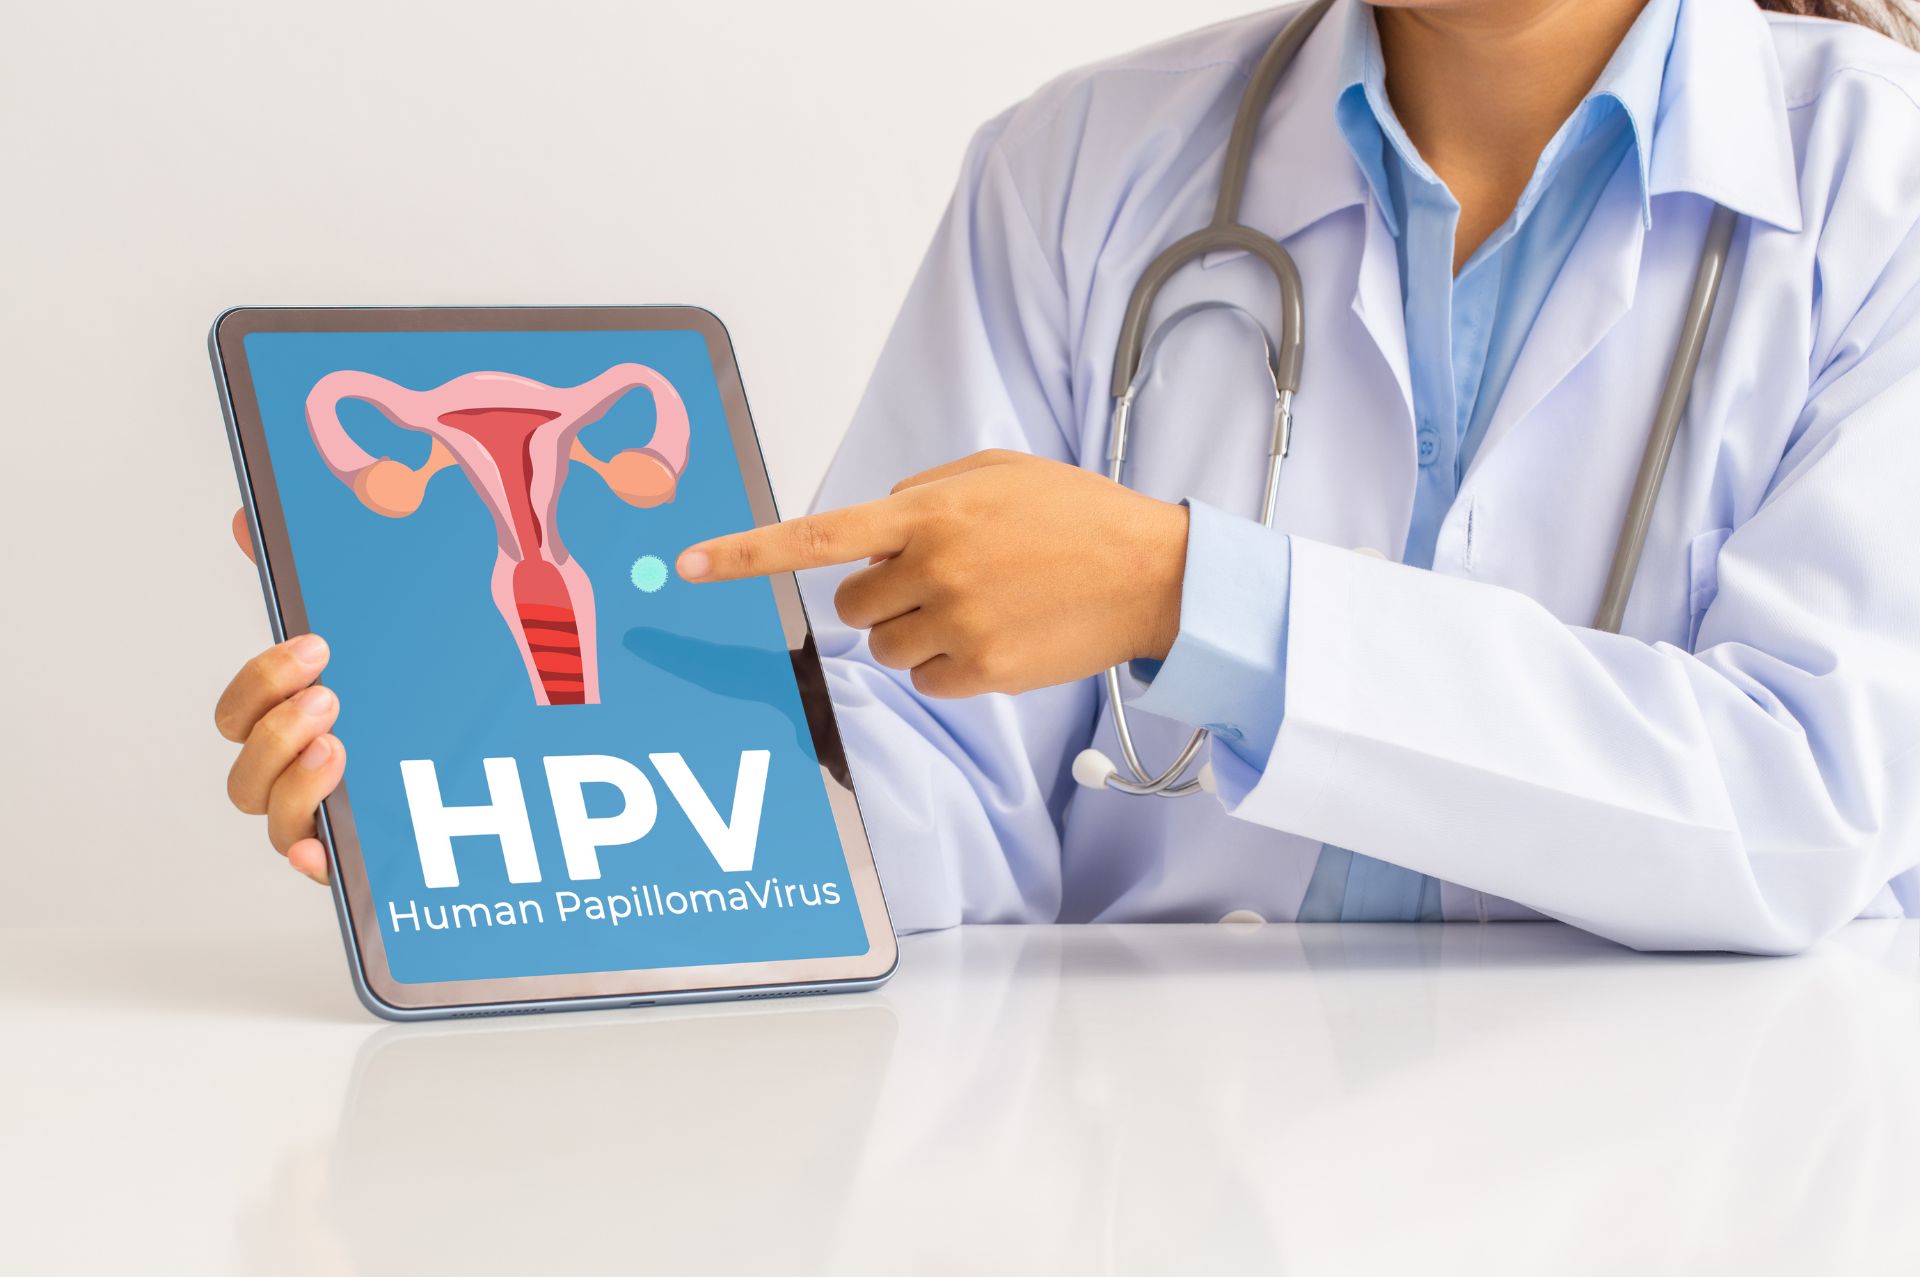 Κολποσκόπηση και HPV: Αντιμετωπίστε σωστά και έγκαιρα τα κονδυλώματα